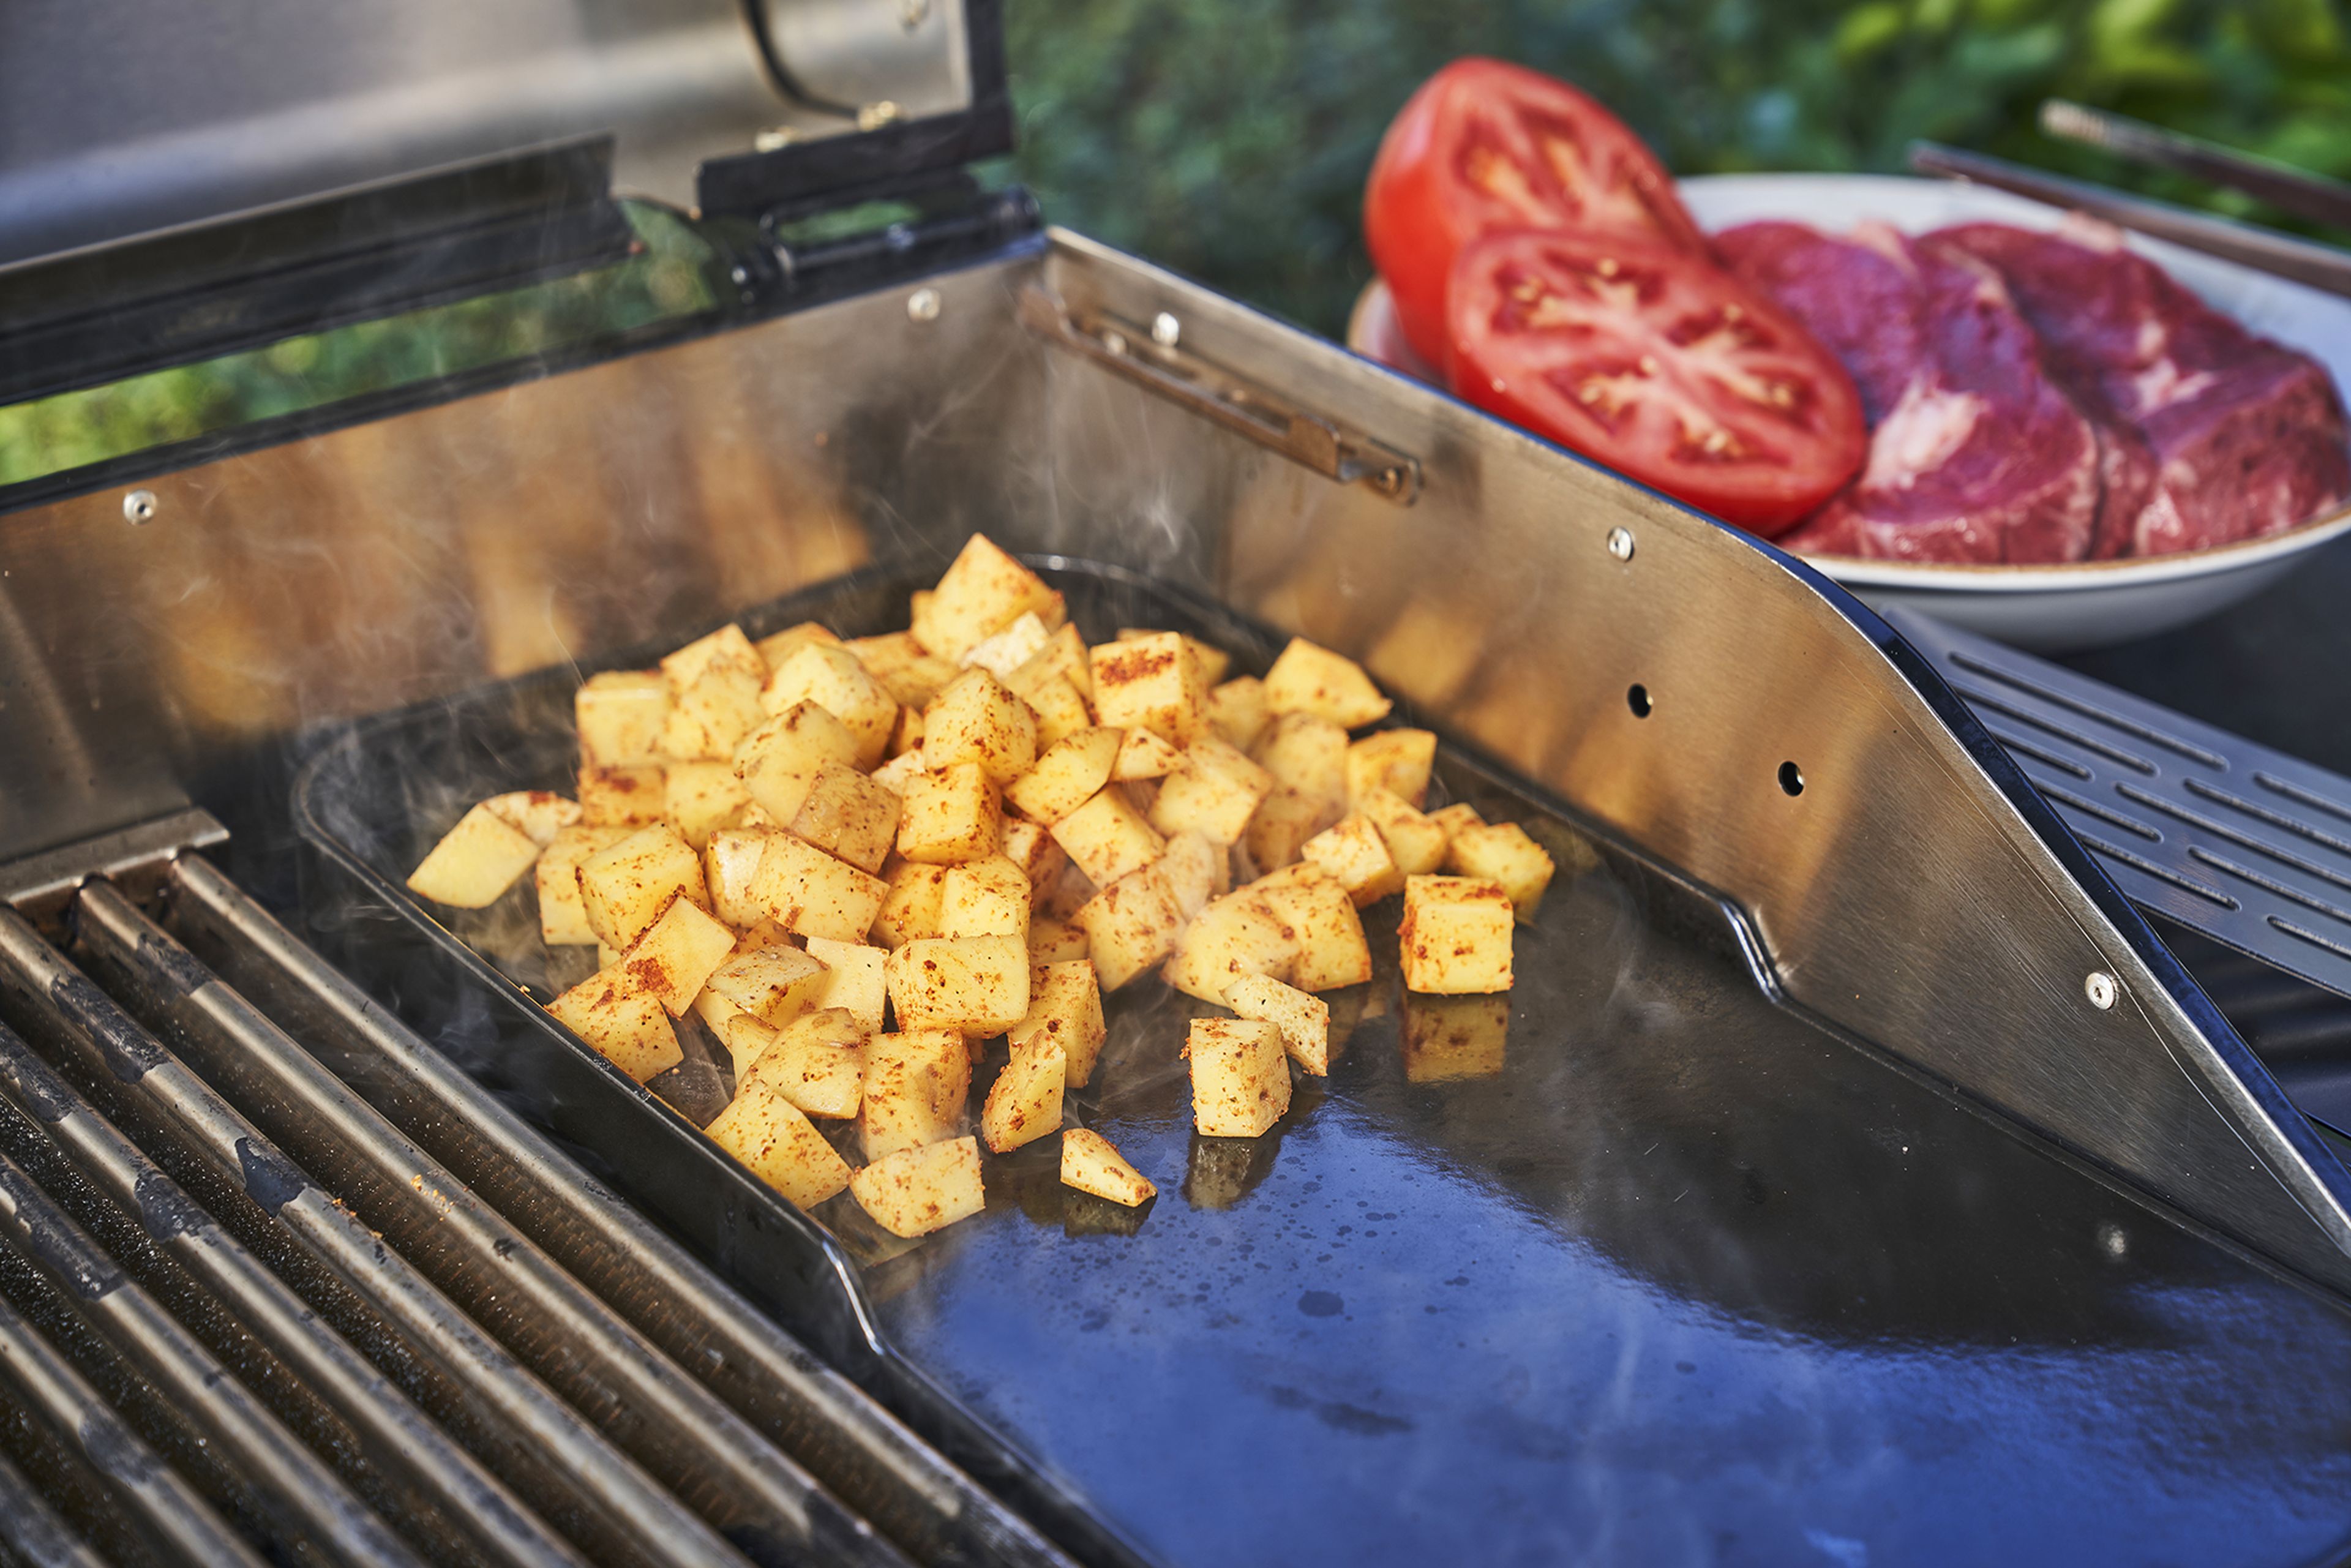 Die Steaks leicht salzen und dann ab auf die vorgeheizten Grillroste damit. Sie sollten von jeder Seite ca. 4-6 Minuten gegrillt werden. Eine Tomate halbieren und ebenfalls leicht angrillen. Währenddessen die Kartoffelwürfel mit etwas Olivenöl auf die Grillplatte geben.